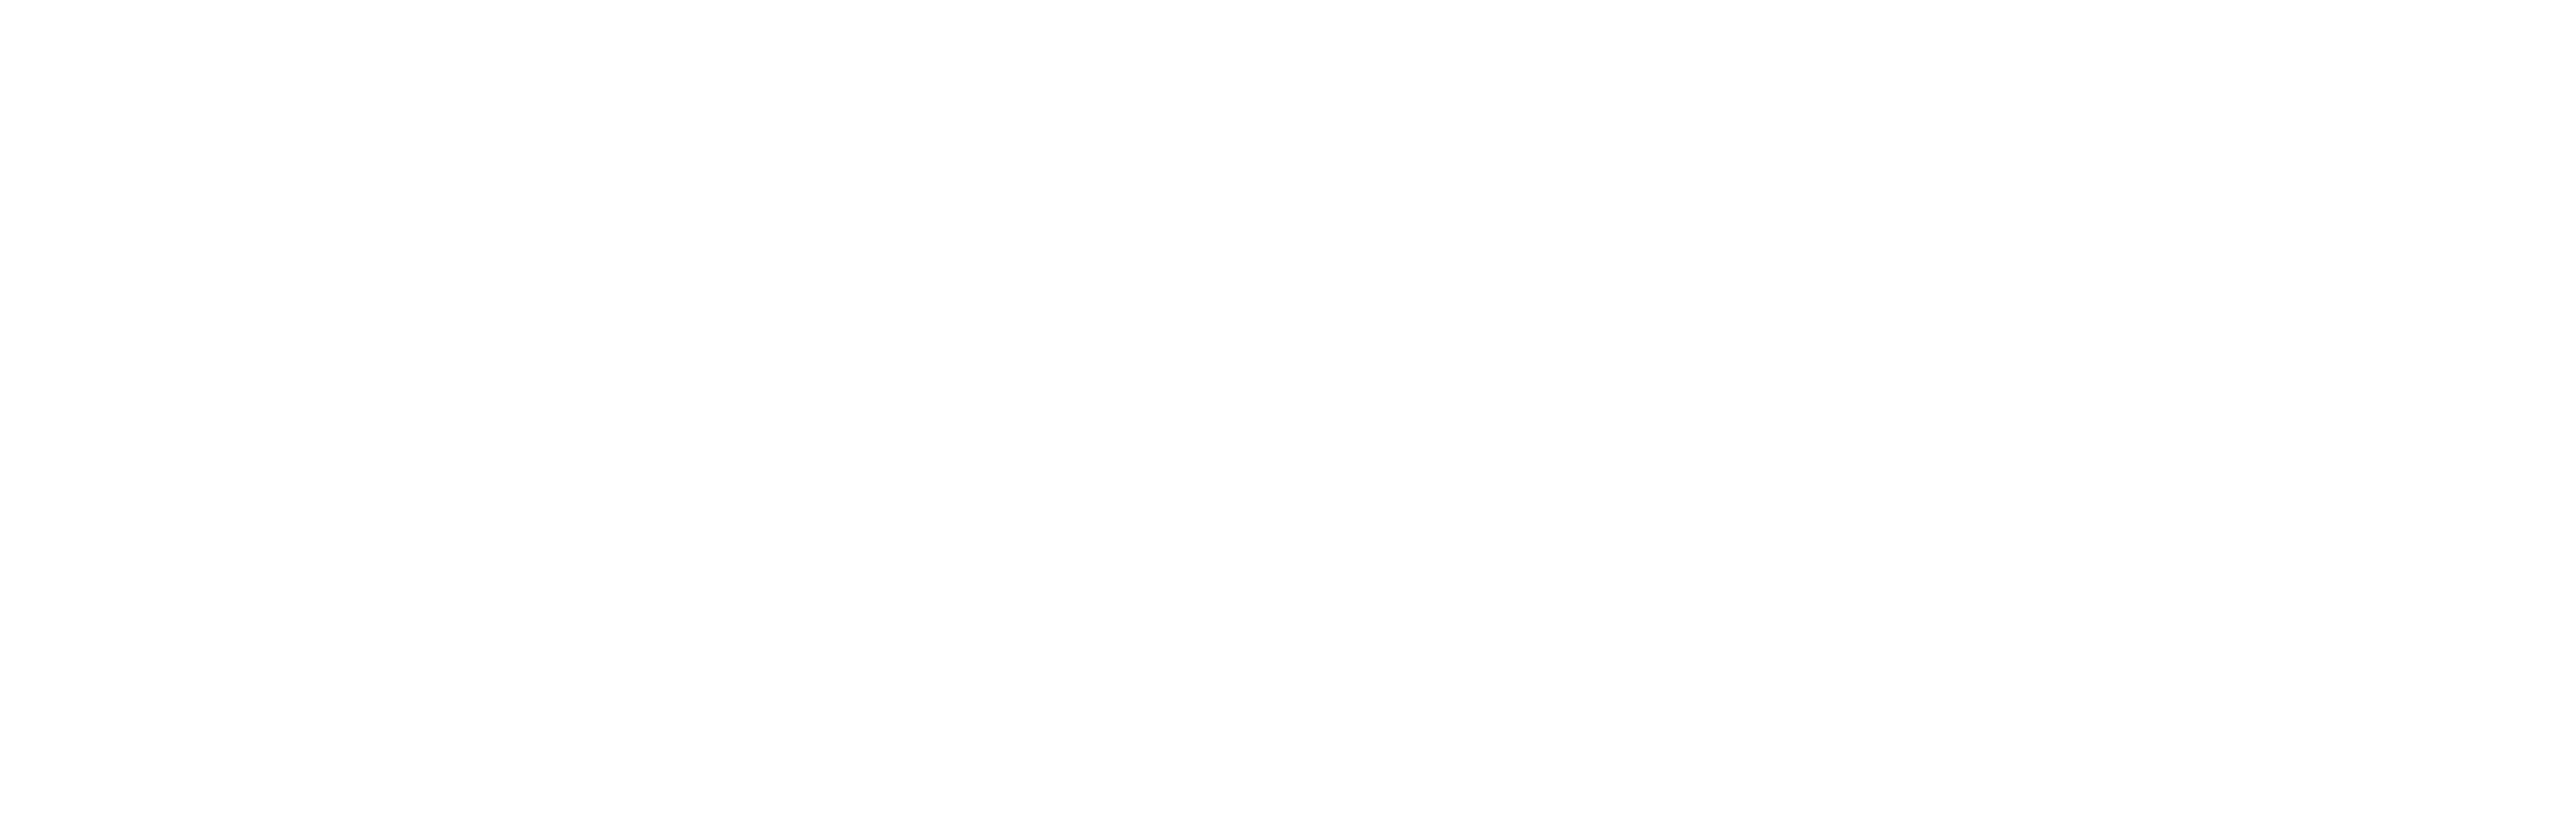 Town of Brattleboro, Vermont logo